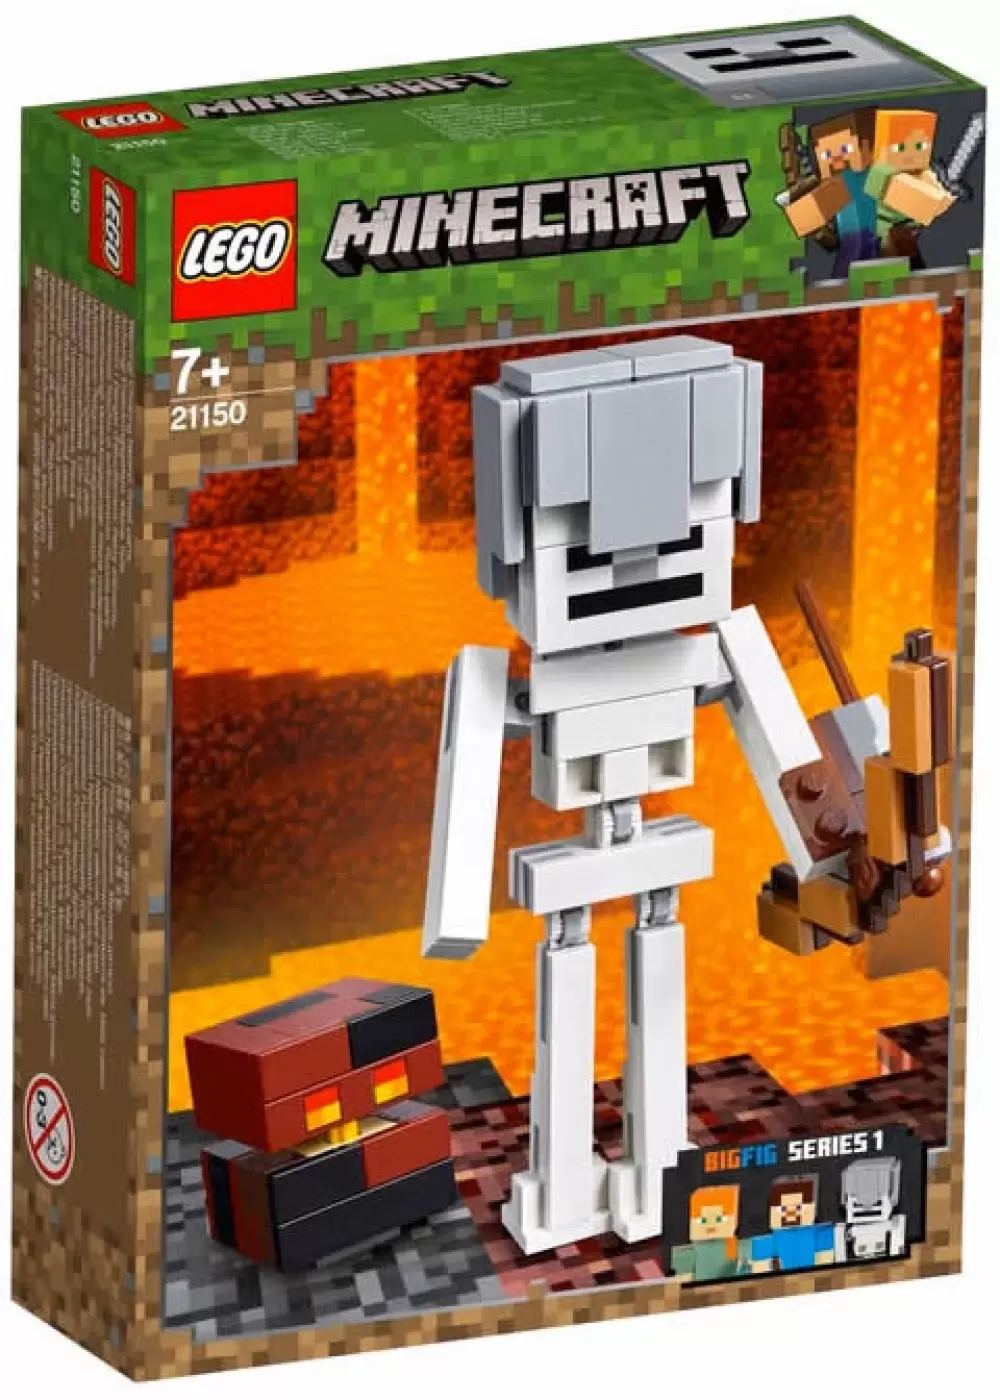 LEGO Minecraft - Skeleton BigFig with Magma Cube